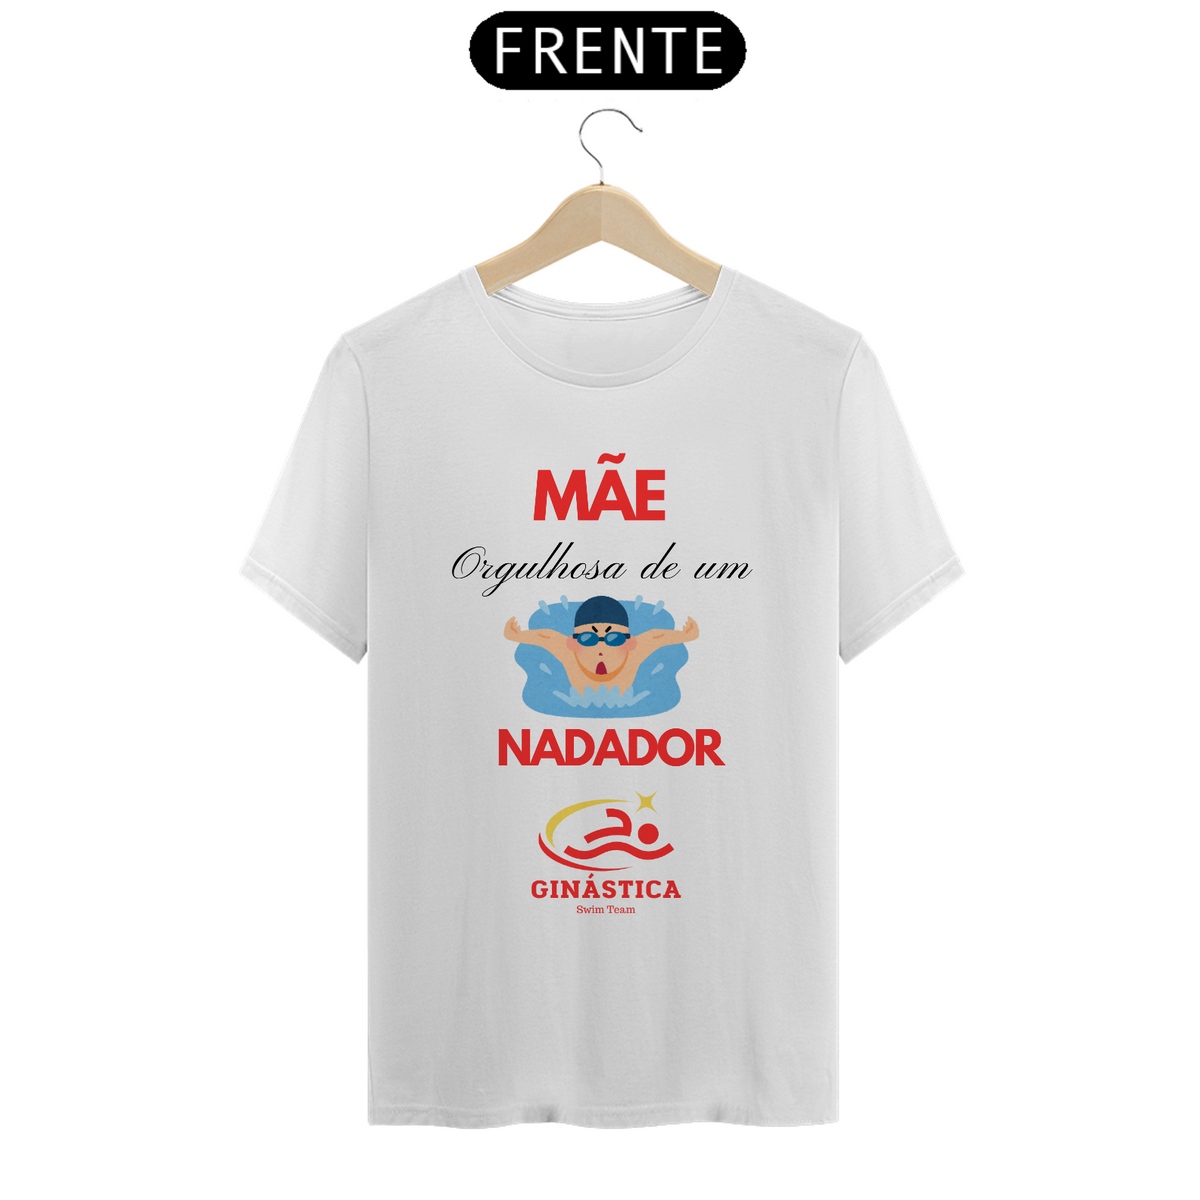 Nome do produto: Camiseta Mãe Nadador